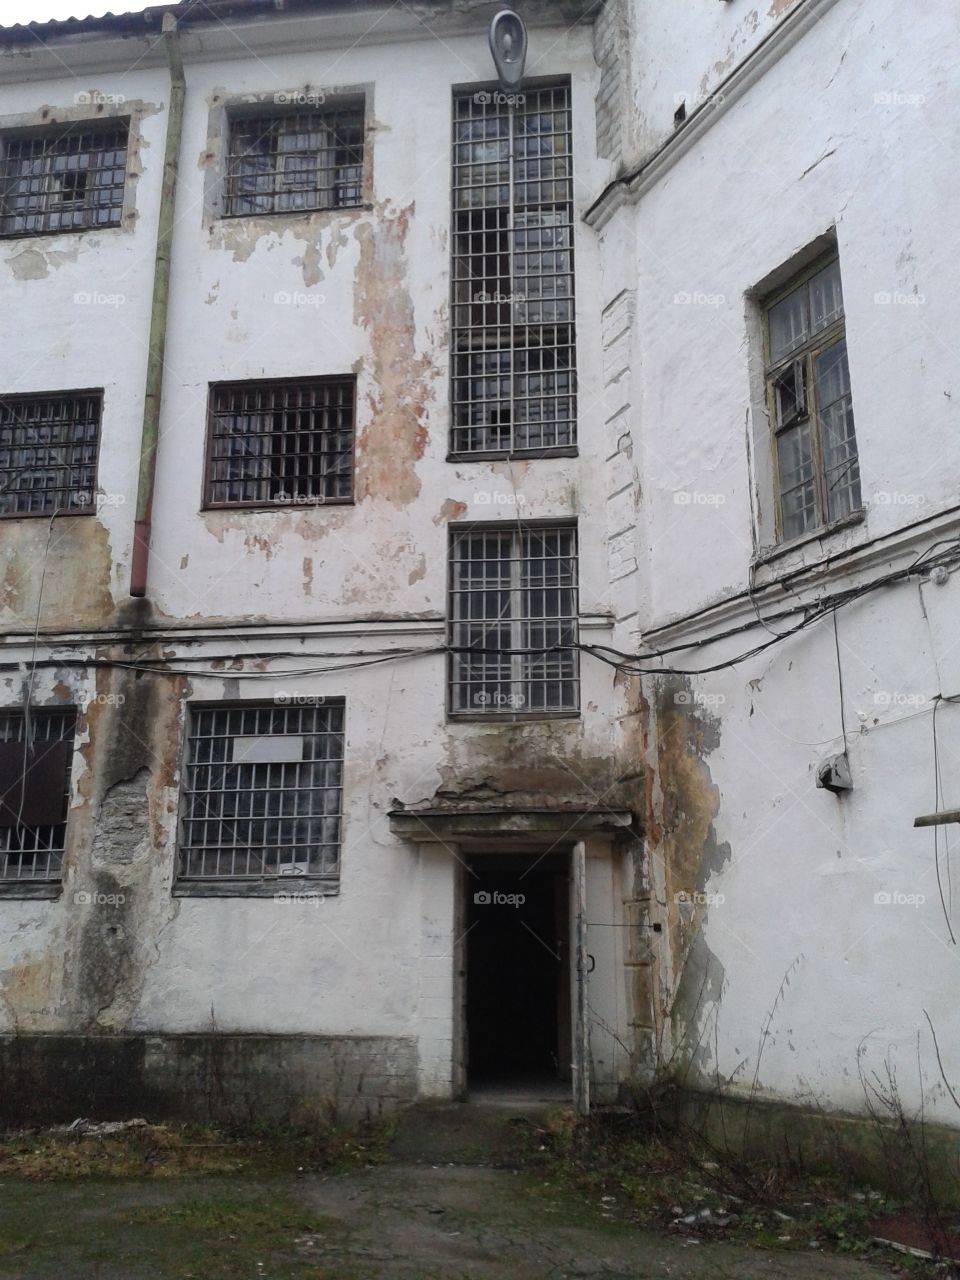 Former prison